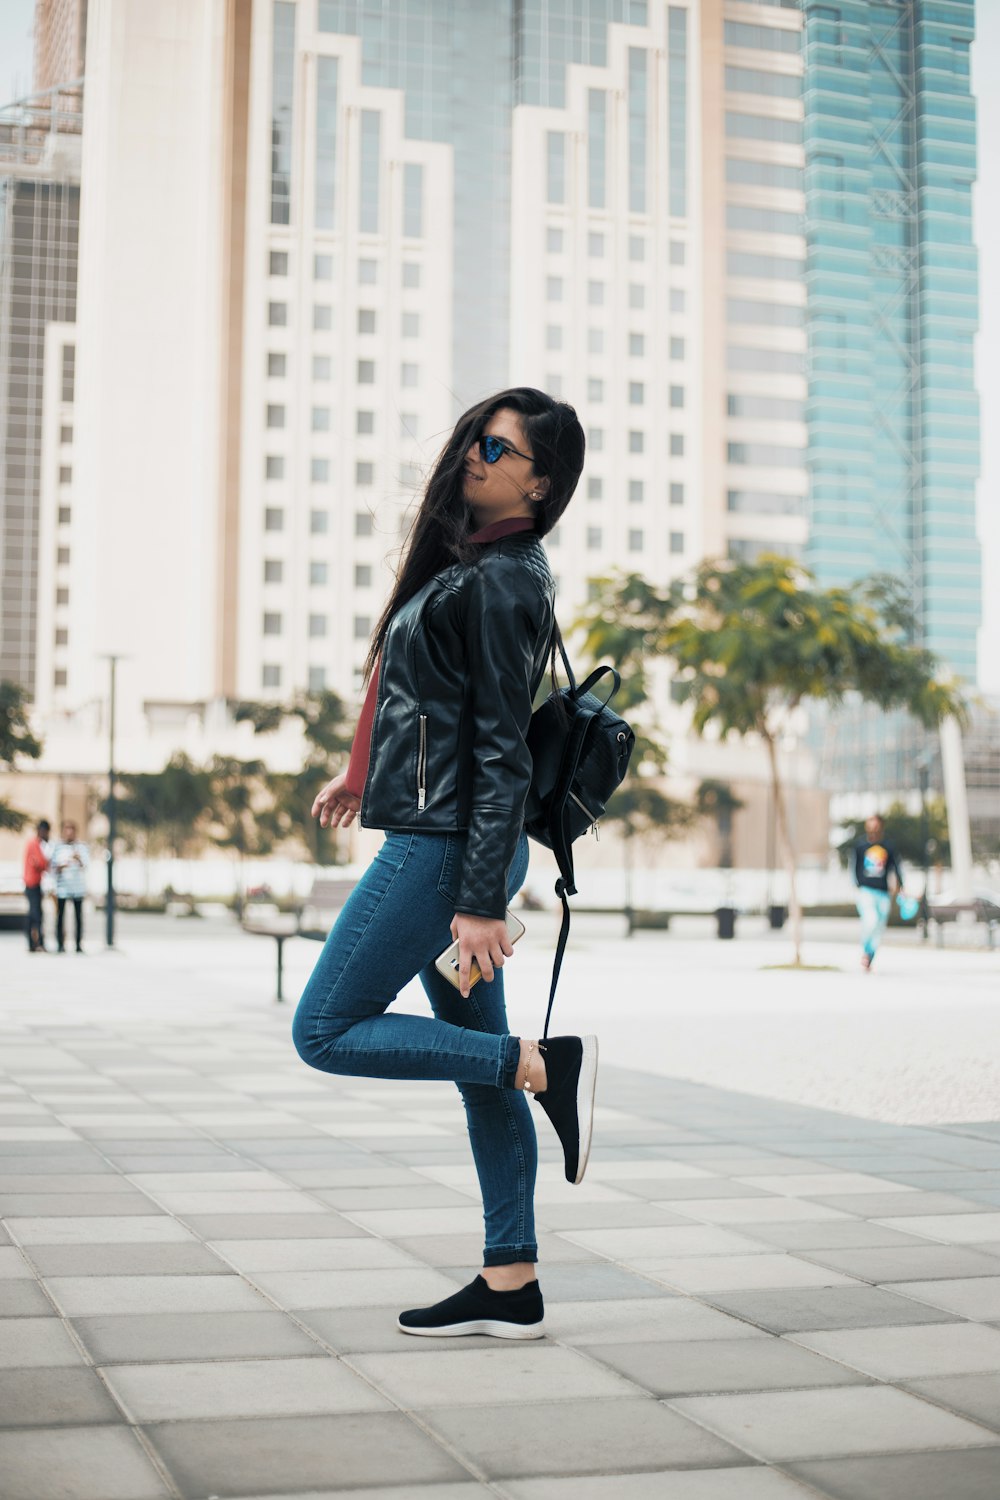 Frau in schwarzer Jacke und blauen Jeans tagsüber auf dem Bürgersteig